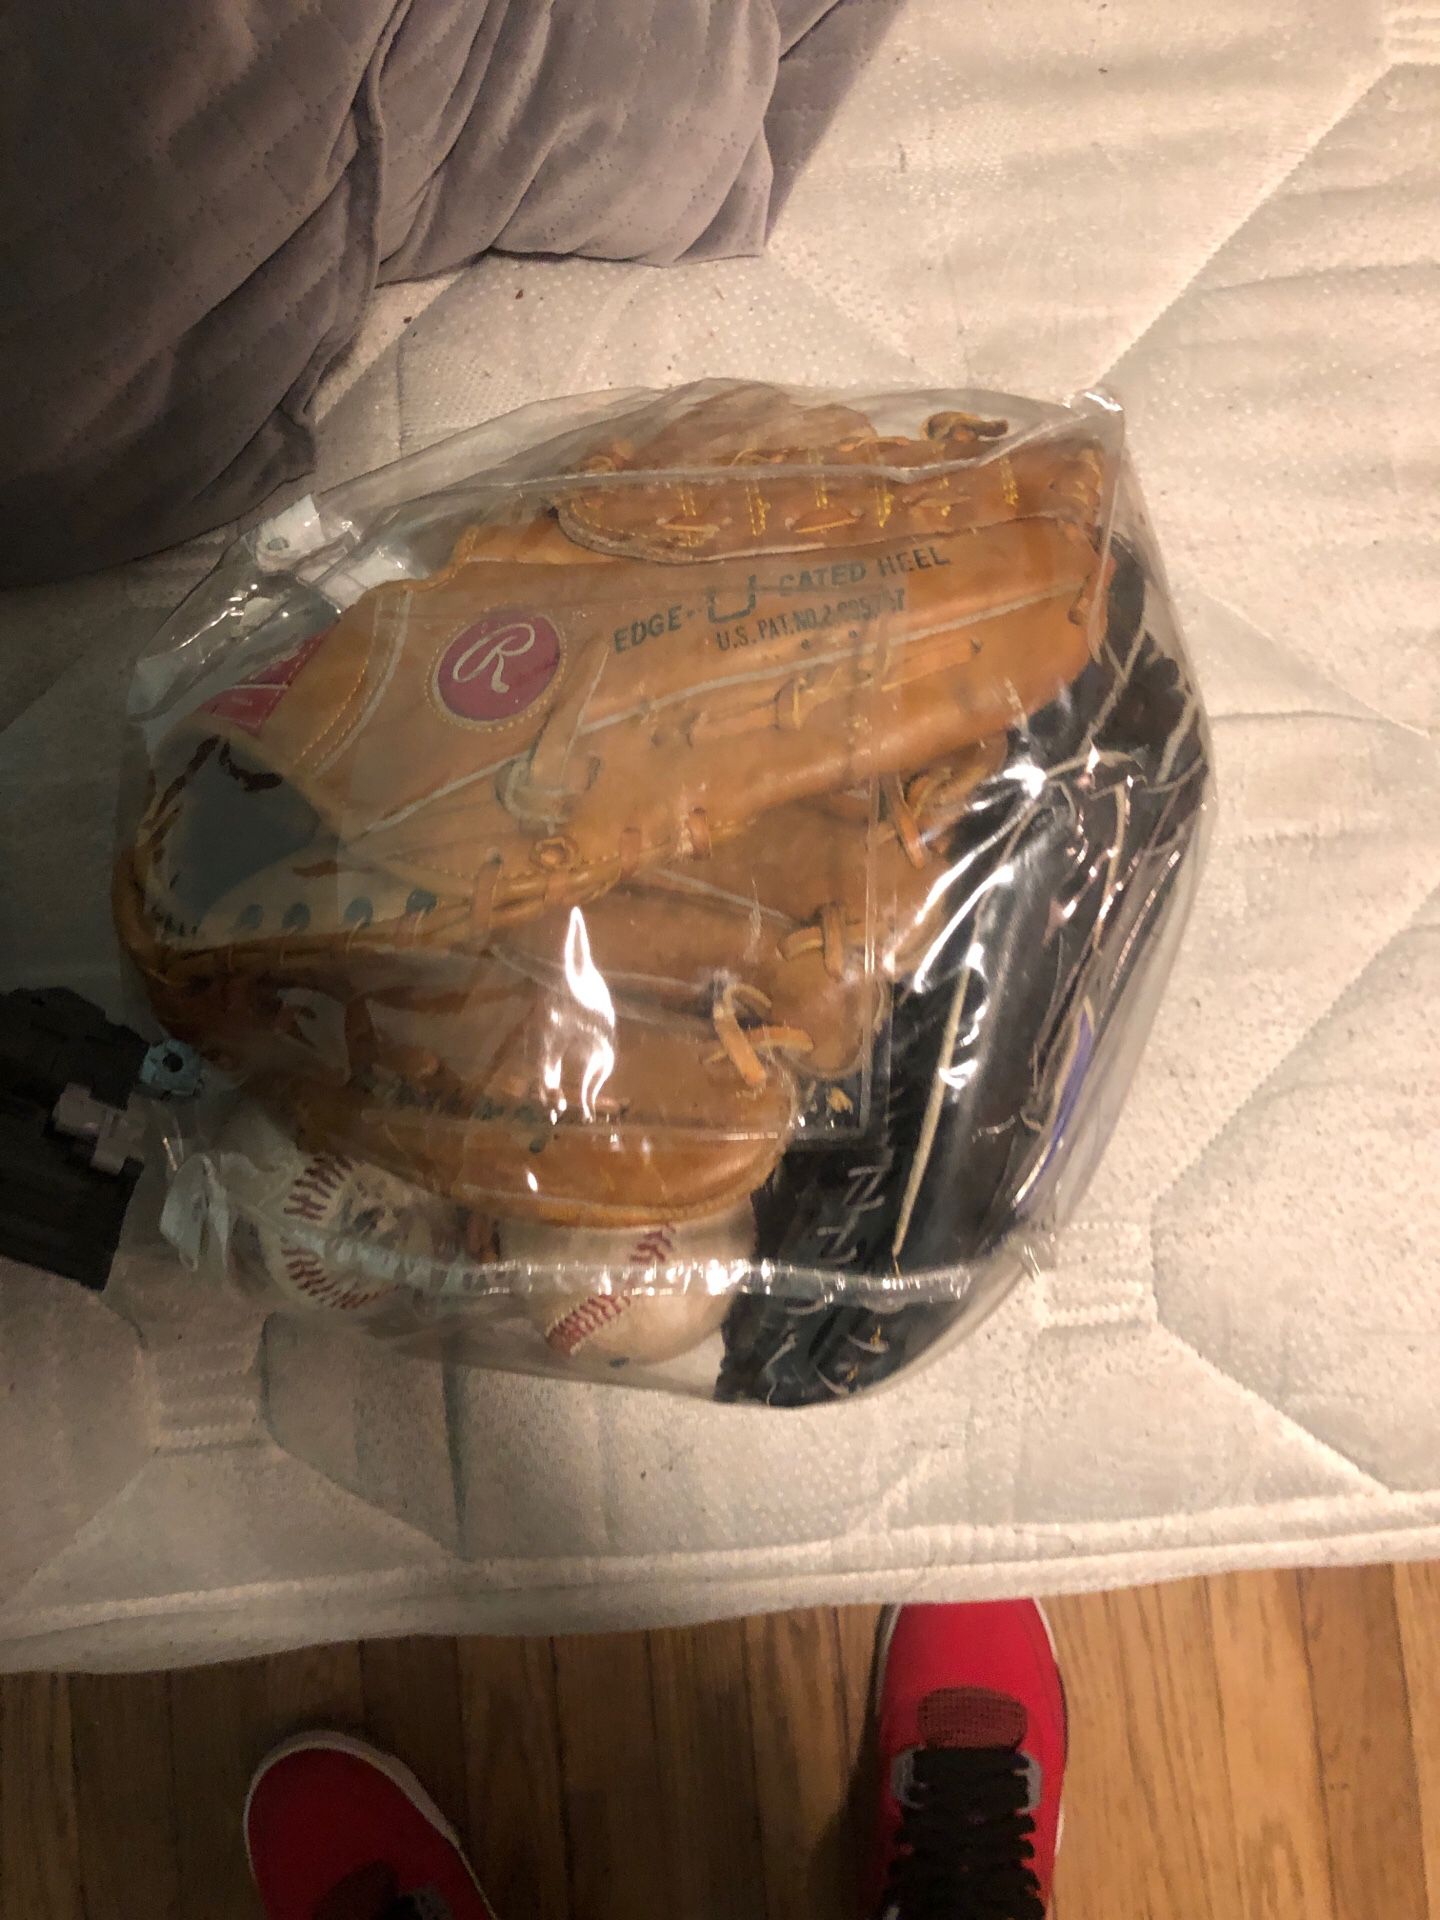 Baseballs/gloves